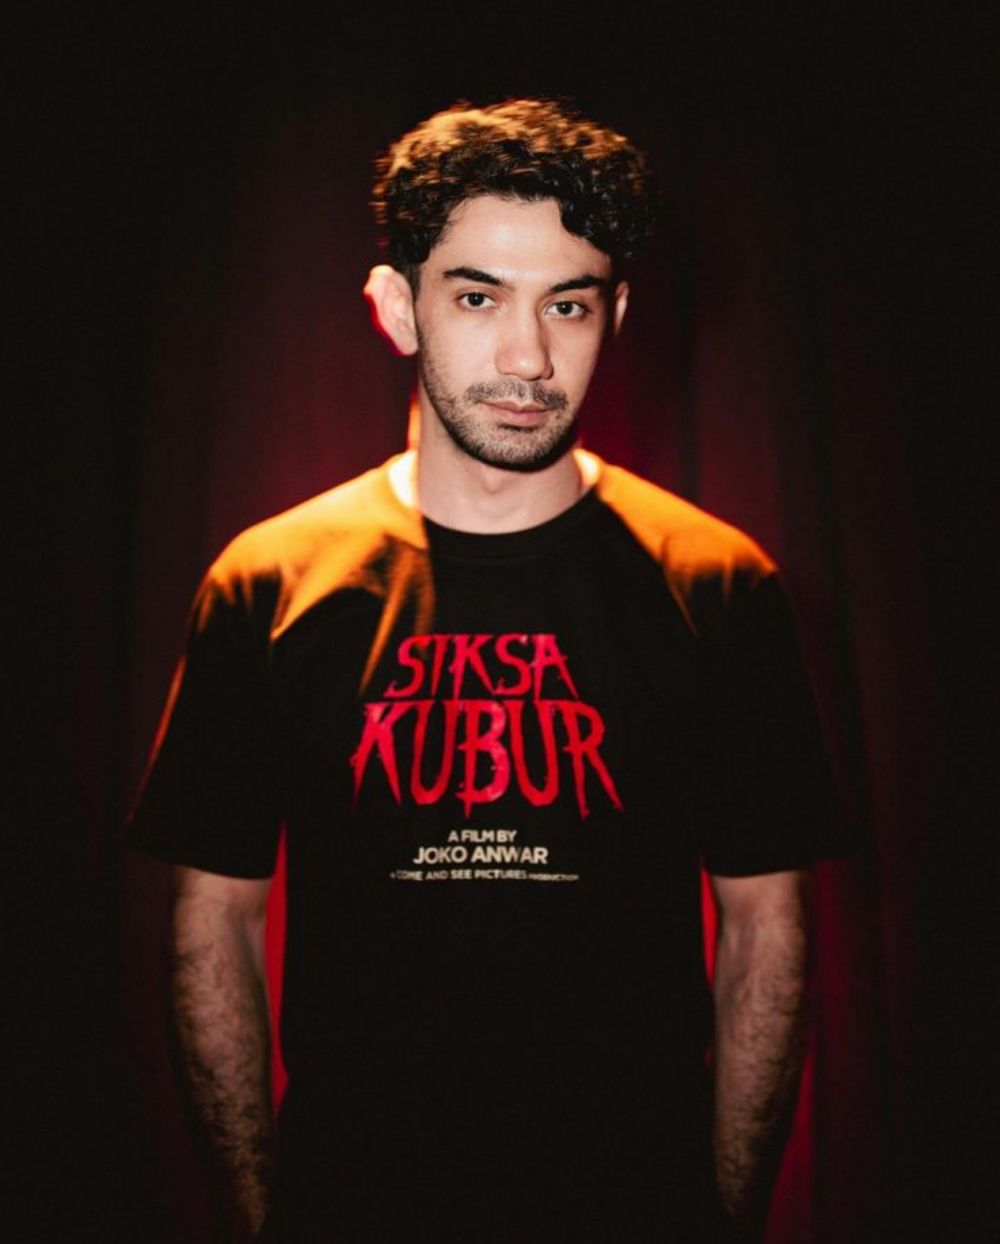 Reza Rahadian come back berperan di film horor setelah 19 tahun lewat film "Siksa Kubur"